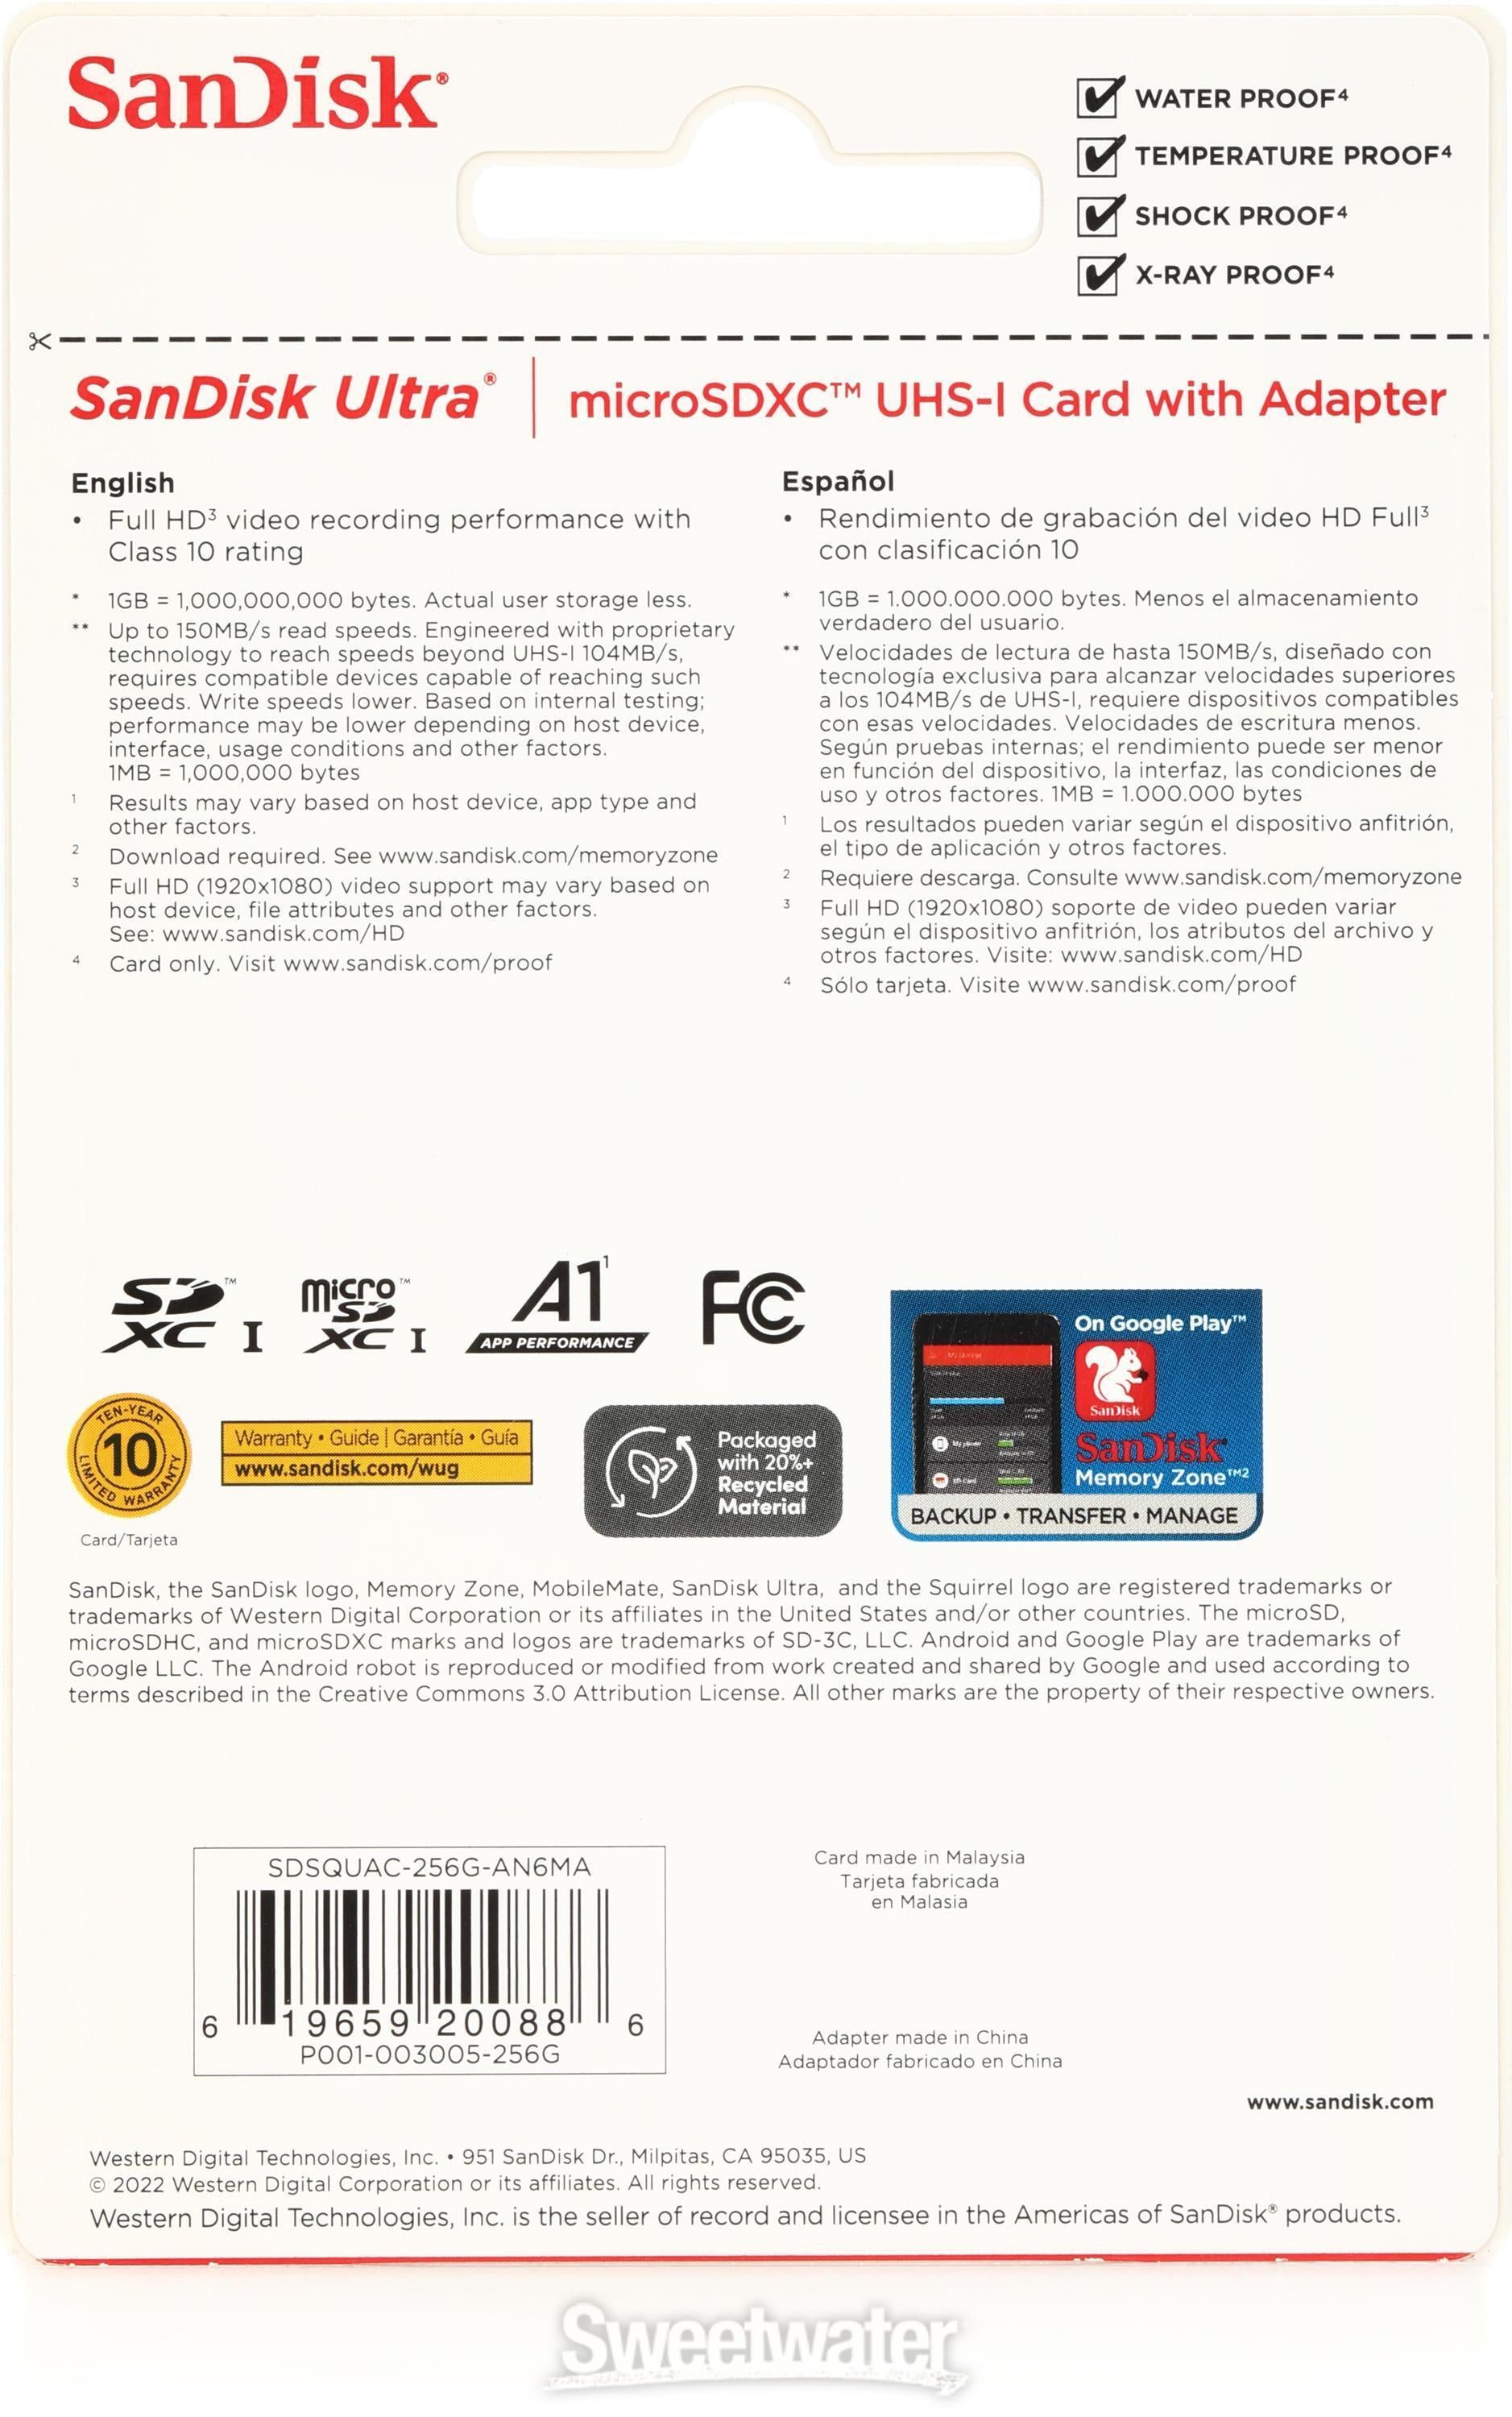 SanDisk Ultra microSDXC Card - 256GB